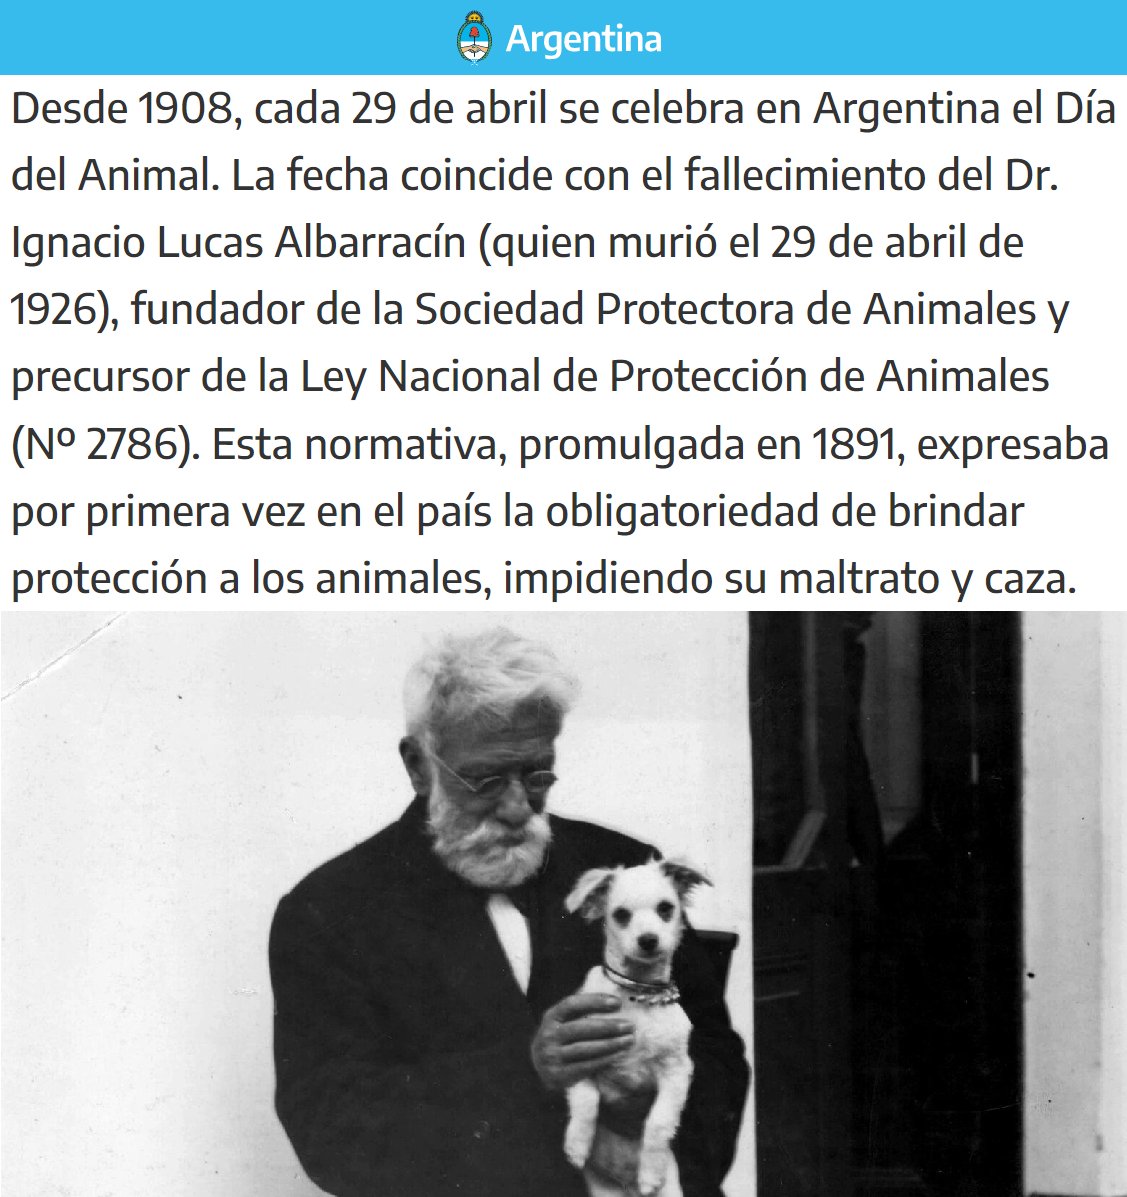 'Ignacio Lucas Albarracín':
Porque hoy es el #DíaDelAnimal en conmemoración de su fallecimiento